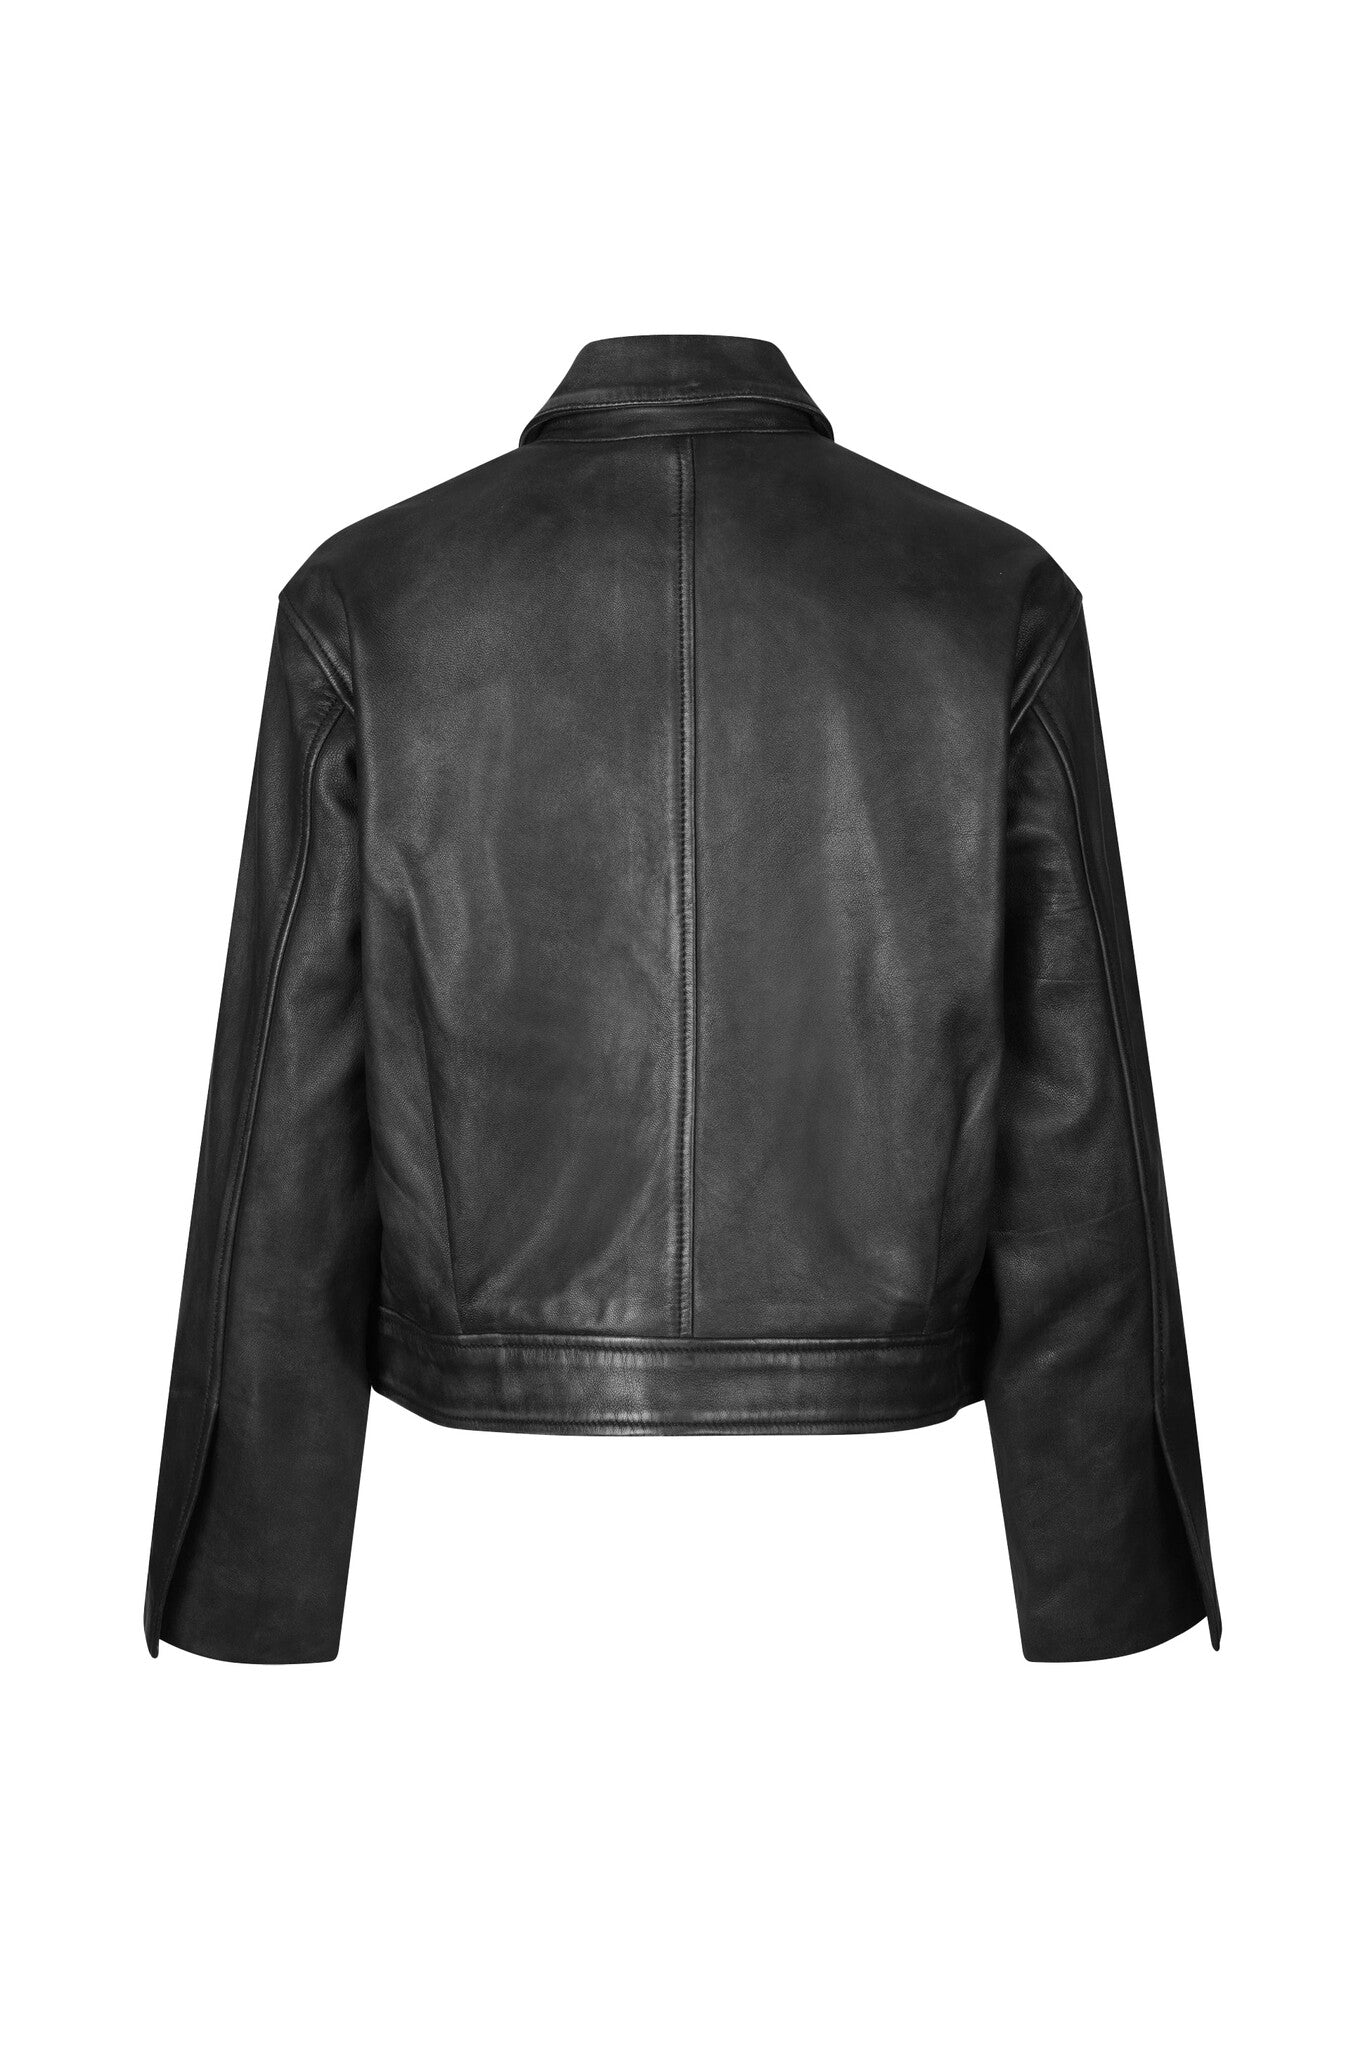 Lato Leather Jacket - Black